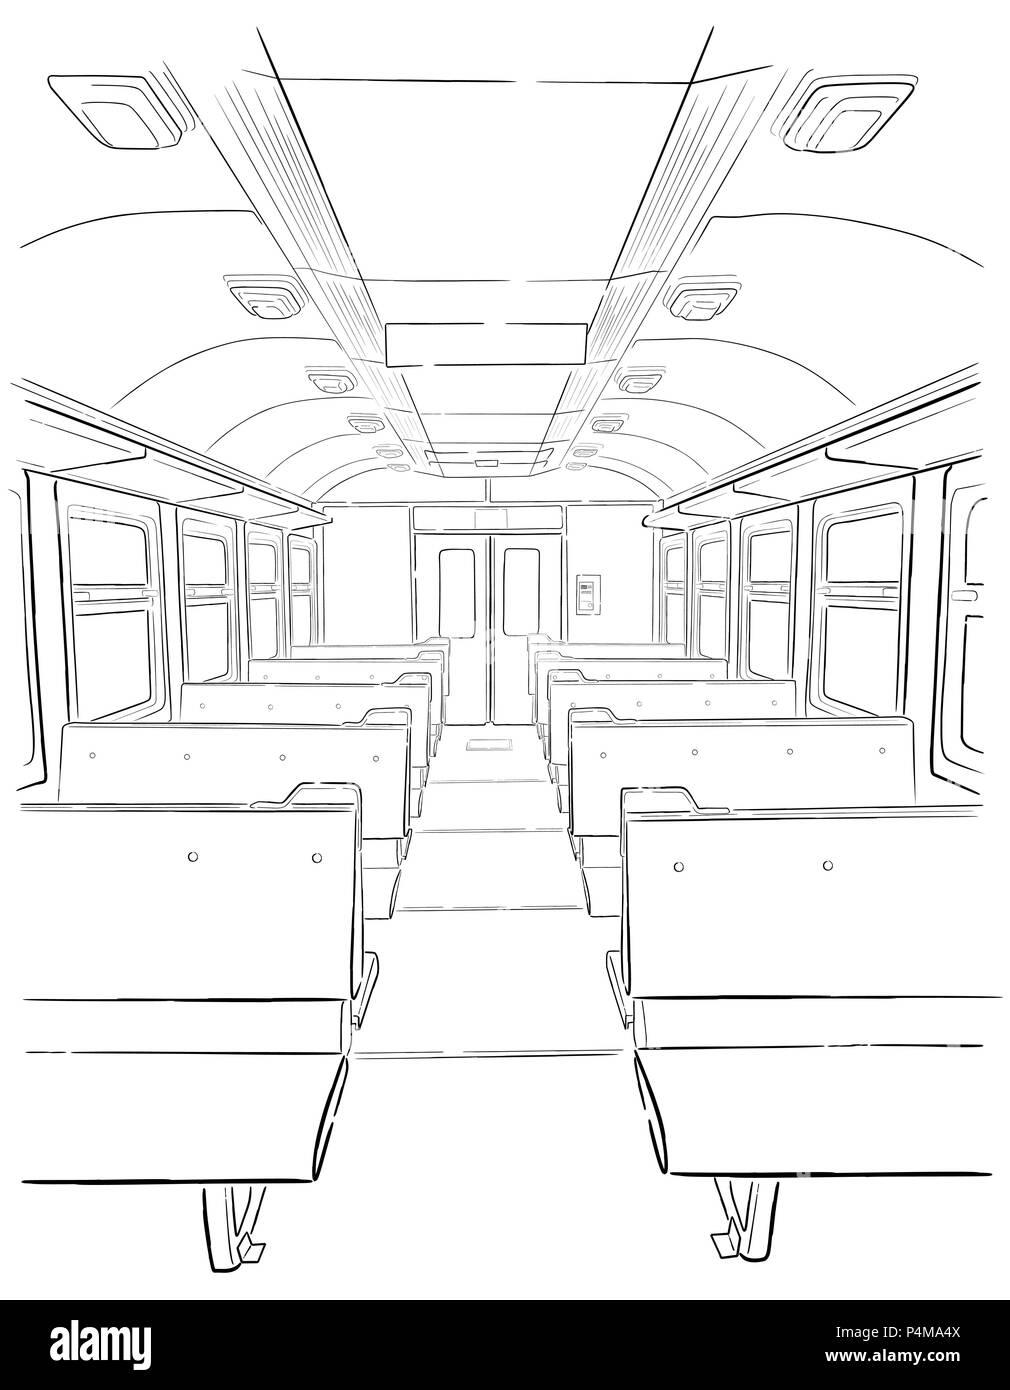 Croquis de vecteur dans la main de l'intérieur du train de voyageurs se noient l'illustration. Illustration de Vecteur